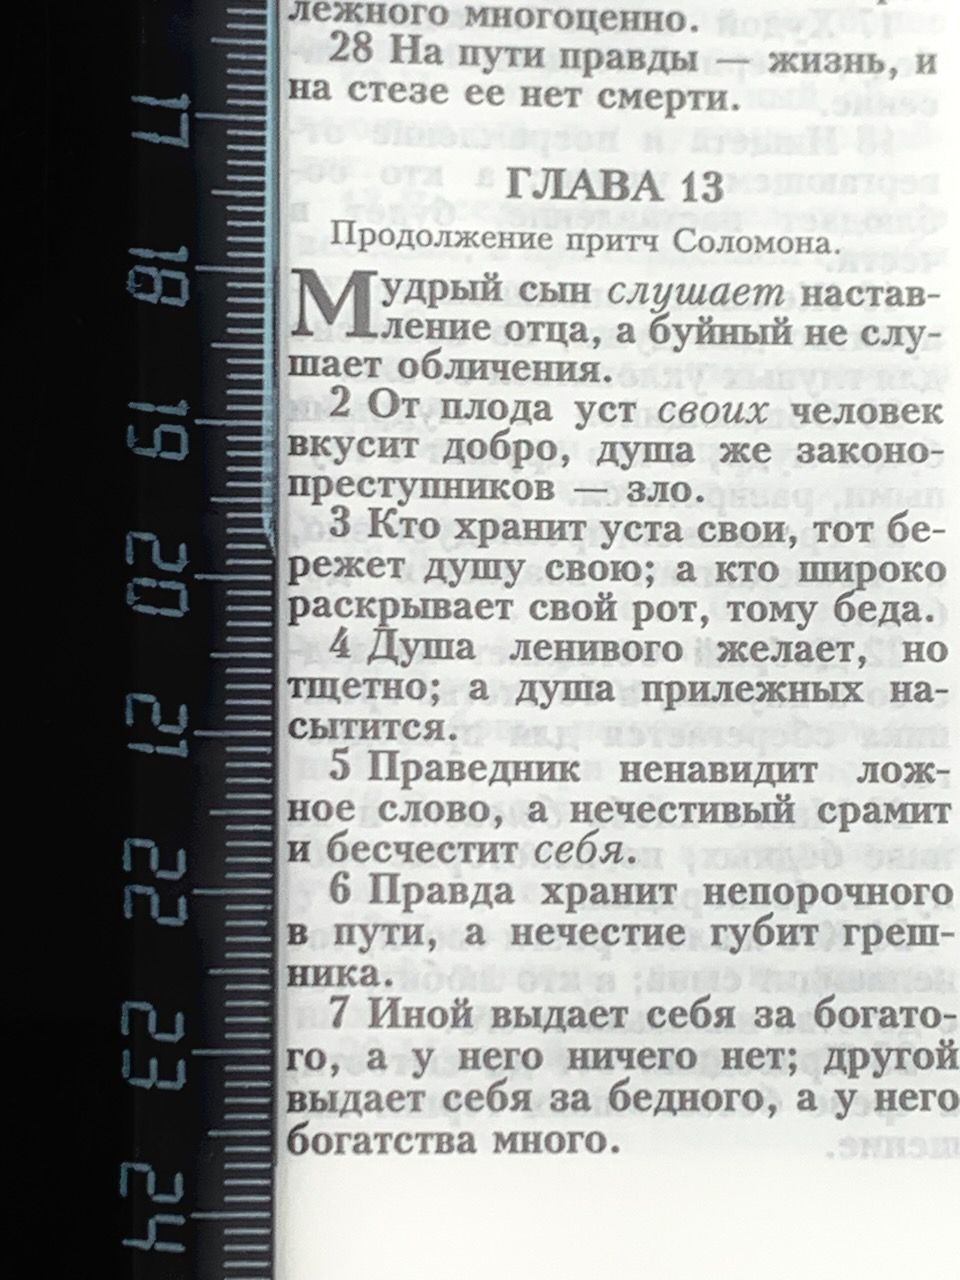 Библия 053zti код A4 дизайн "золотой лев", кожаный переплет на молнии с индексами, цвет коричневый пятнистый, формат 140*202 мм